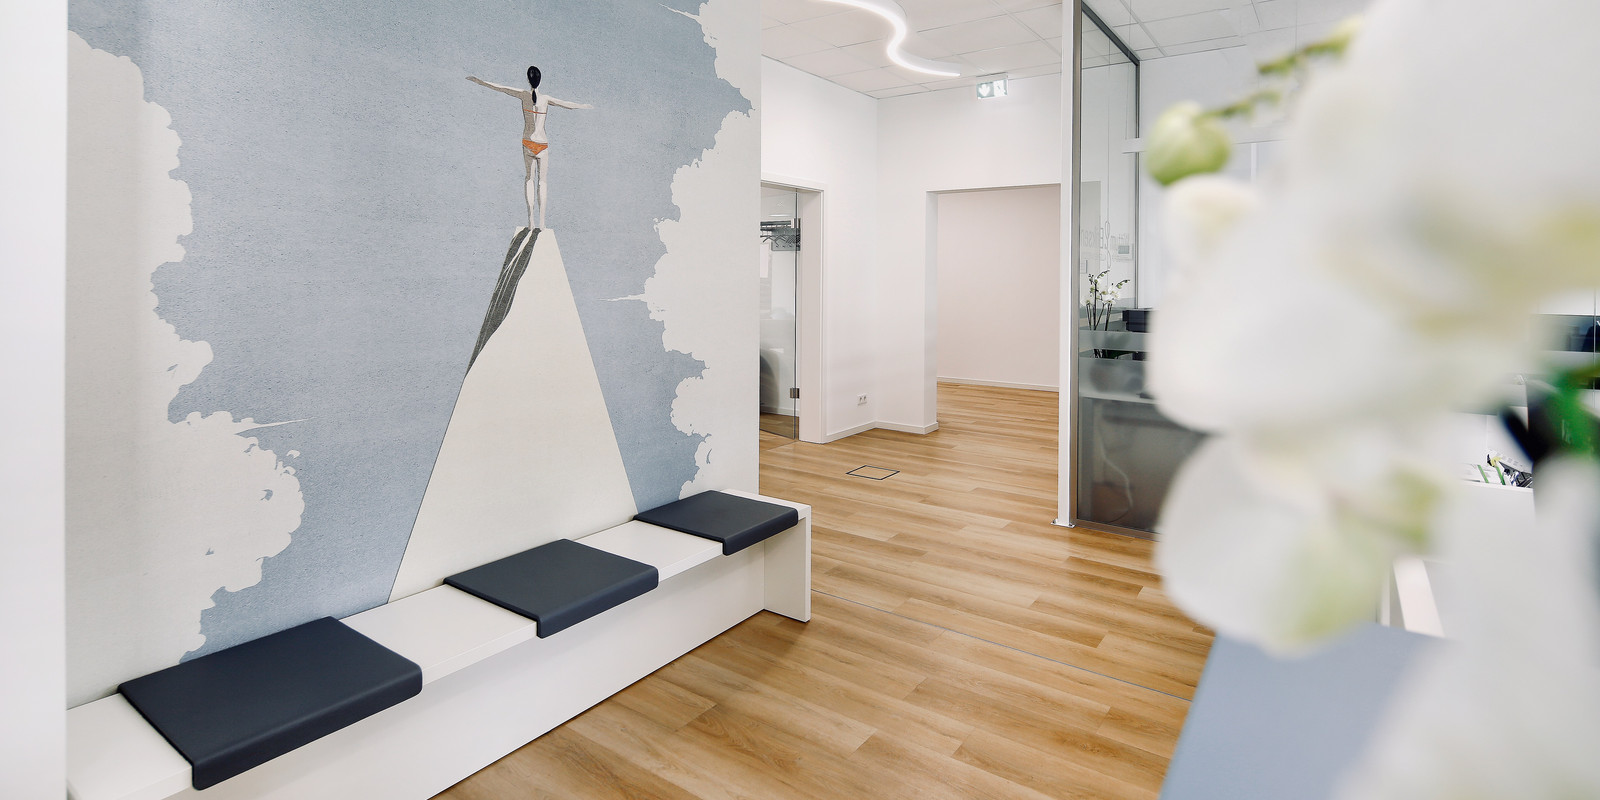 pro office Hameln richtet die neuen Praxisräume von den Allgemeinmedizinern Wittum & Eriksen in Obernkirchen ein Bild 3